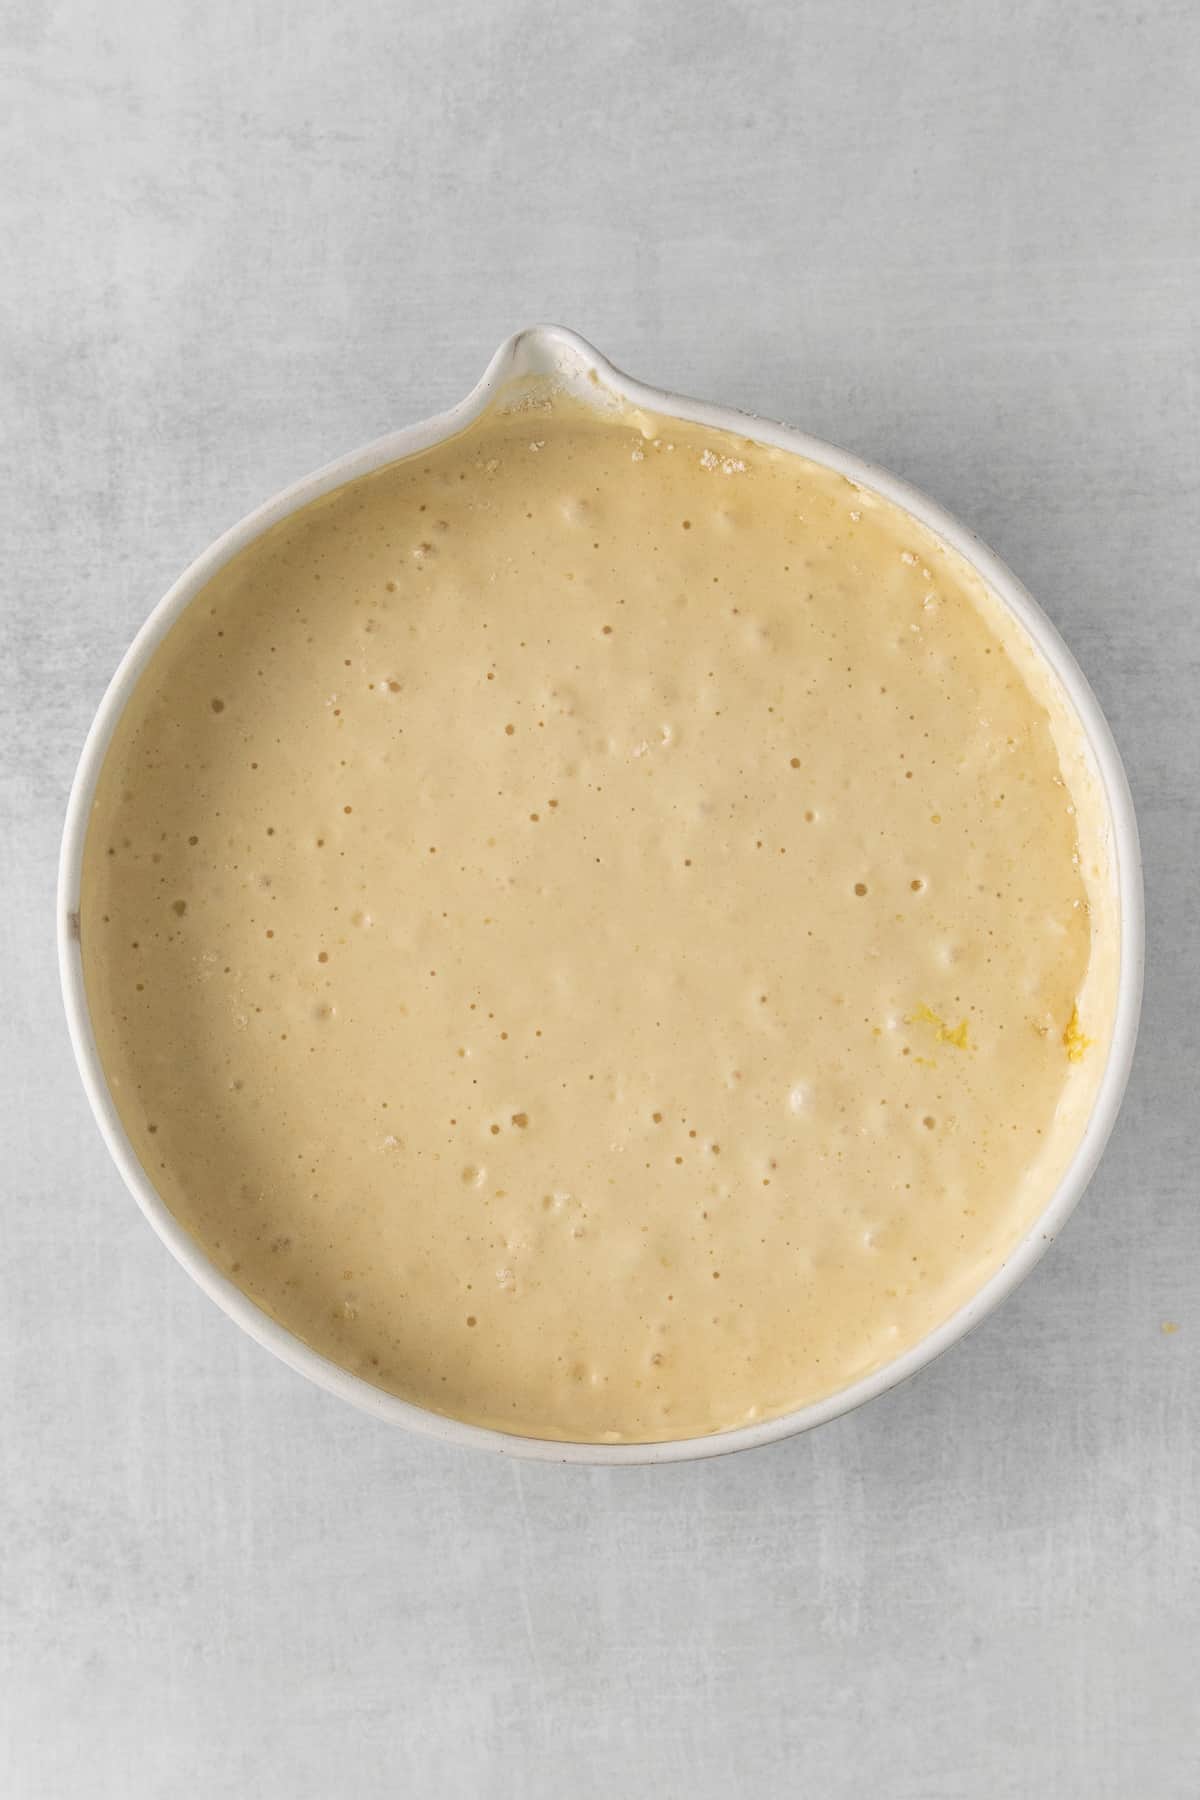 Lemon ricotta pancake batter in a bowl.